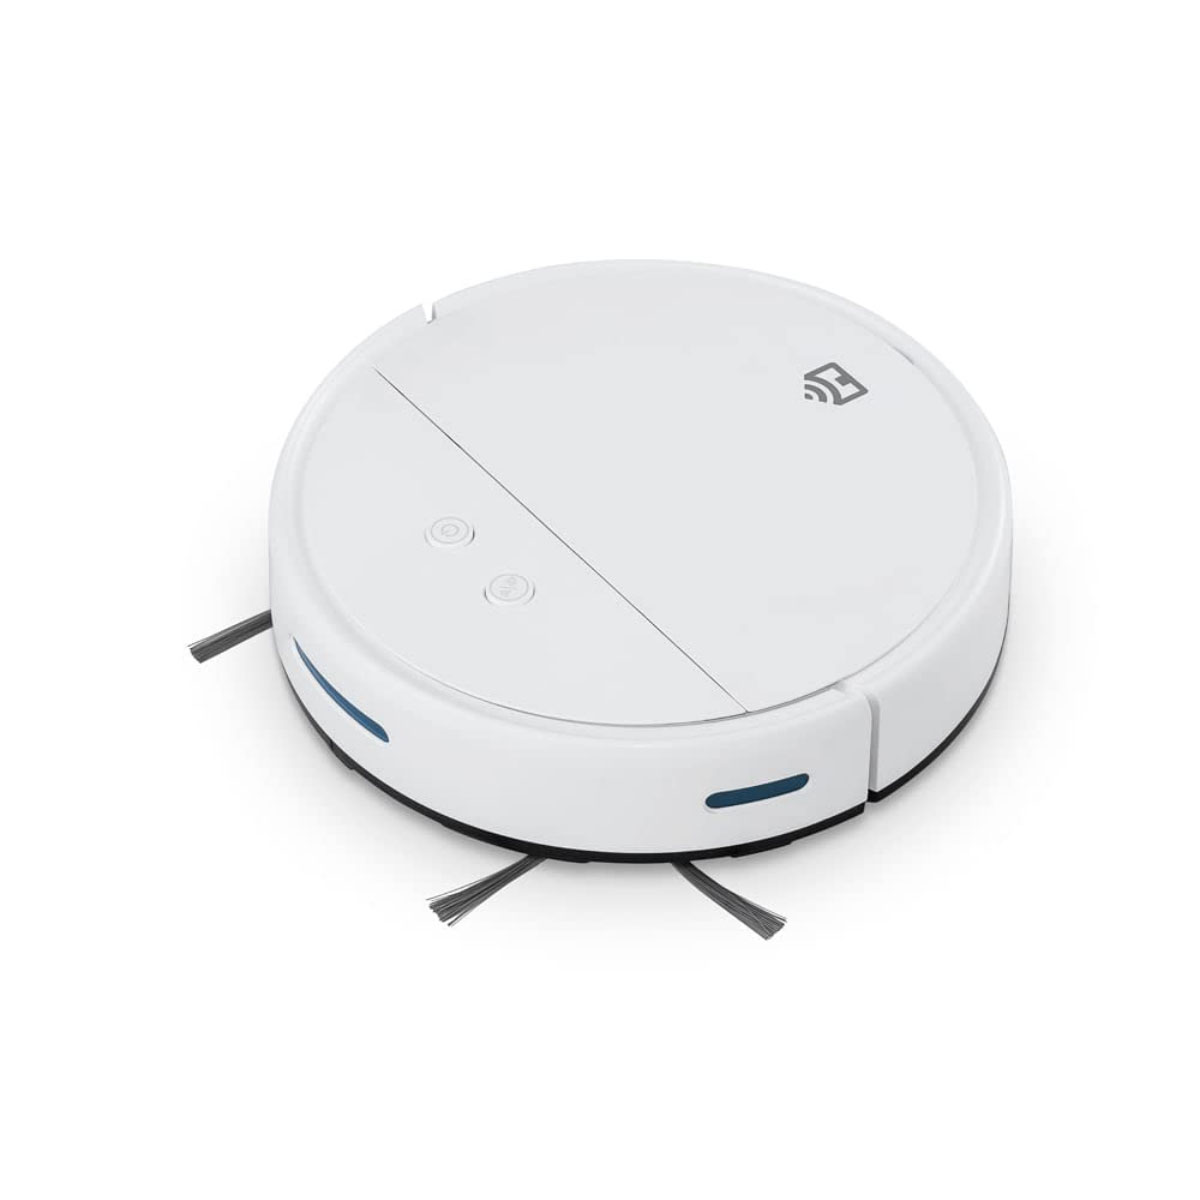 Robô Aspirador de Pó Positivo Smart Wi-Fi - Varre, Aspira e Passa Pano - Compativel com Alexa e Google Assistente - Branco - PRA100